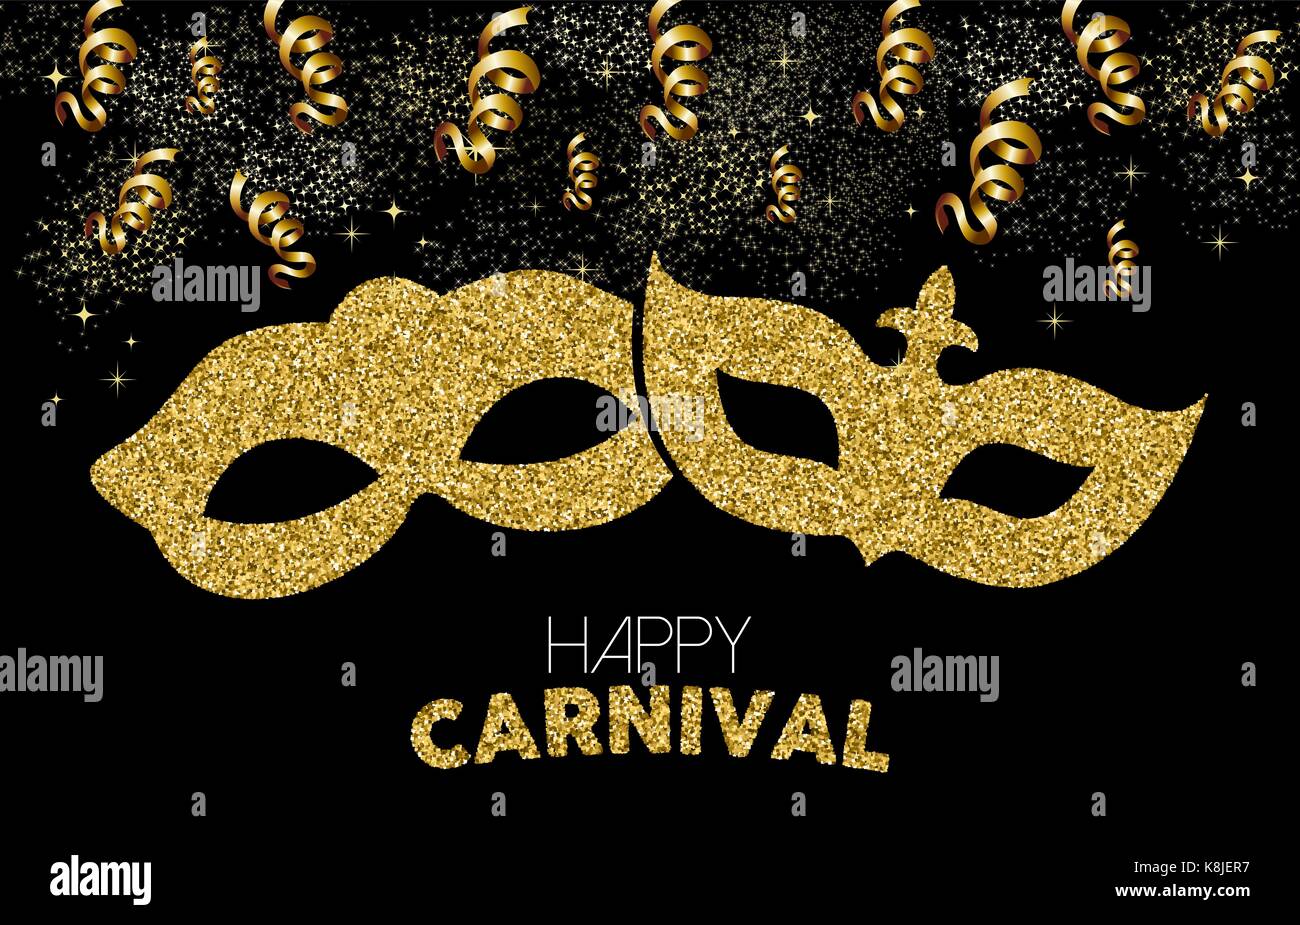 Gold Karneval Design. Kostüm Maske aus goldenen glitter mit Text zitieren, party Luftschlangen und Konfetti. EPS 10 Vektor. Stock Vektor